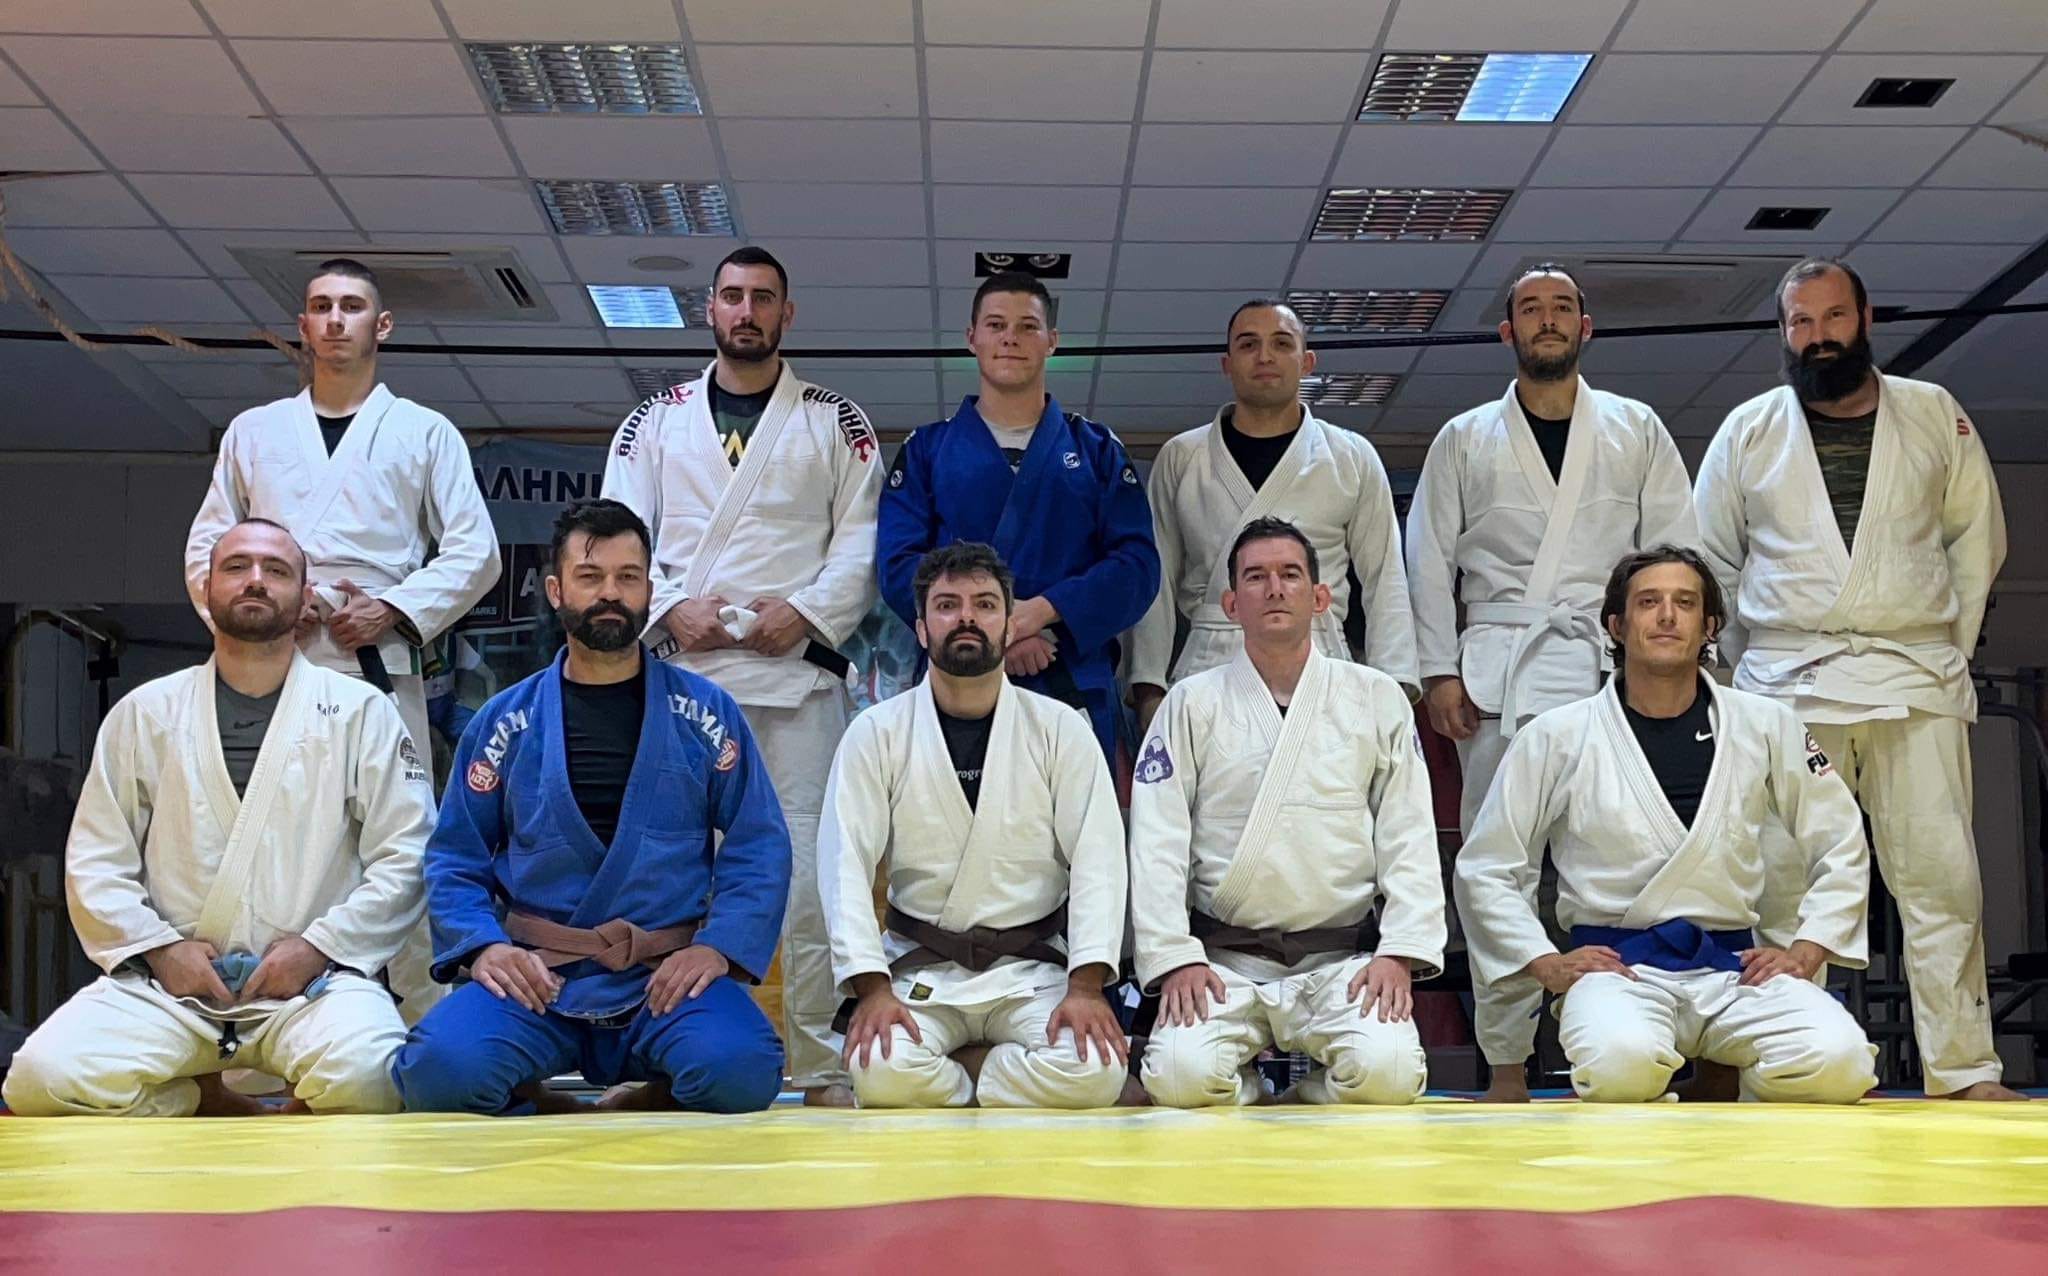 Πάλη: Με μεγάλη συμμετοχή το τμήμα Brazilian jiu-jitsu